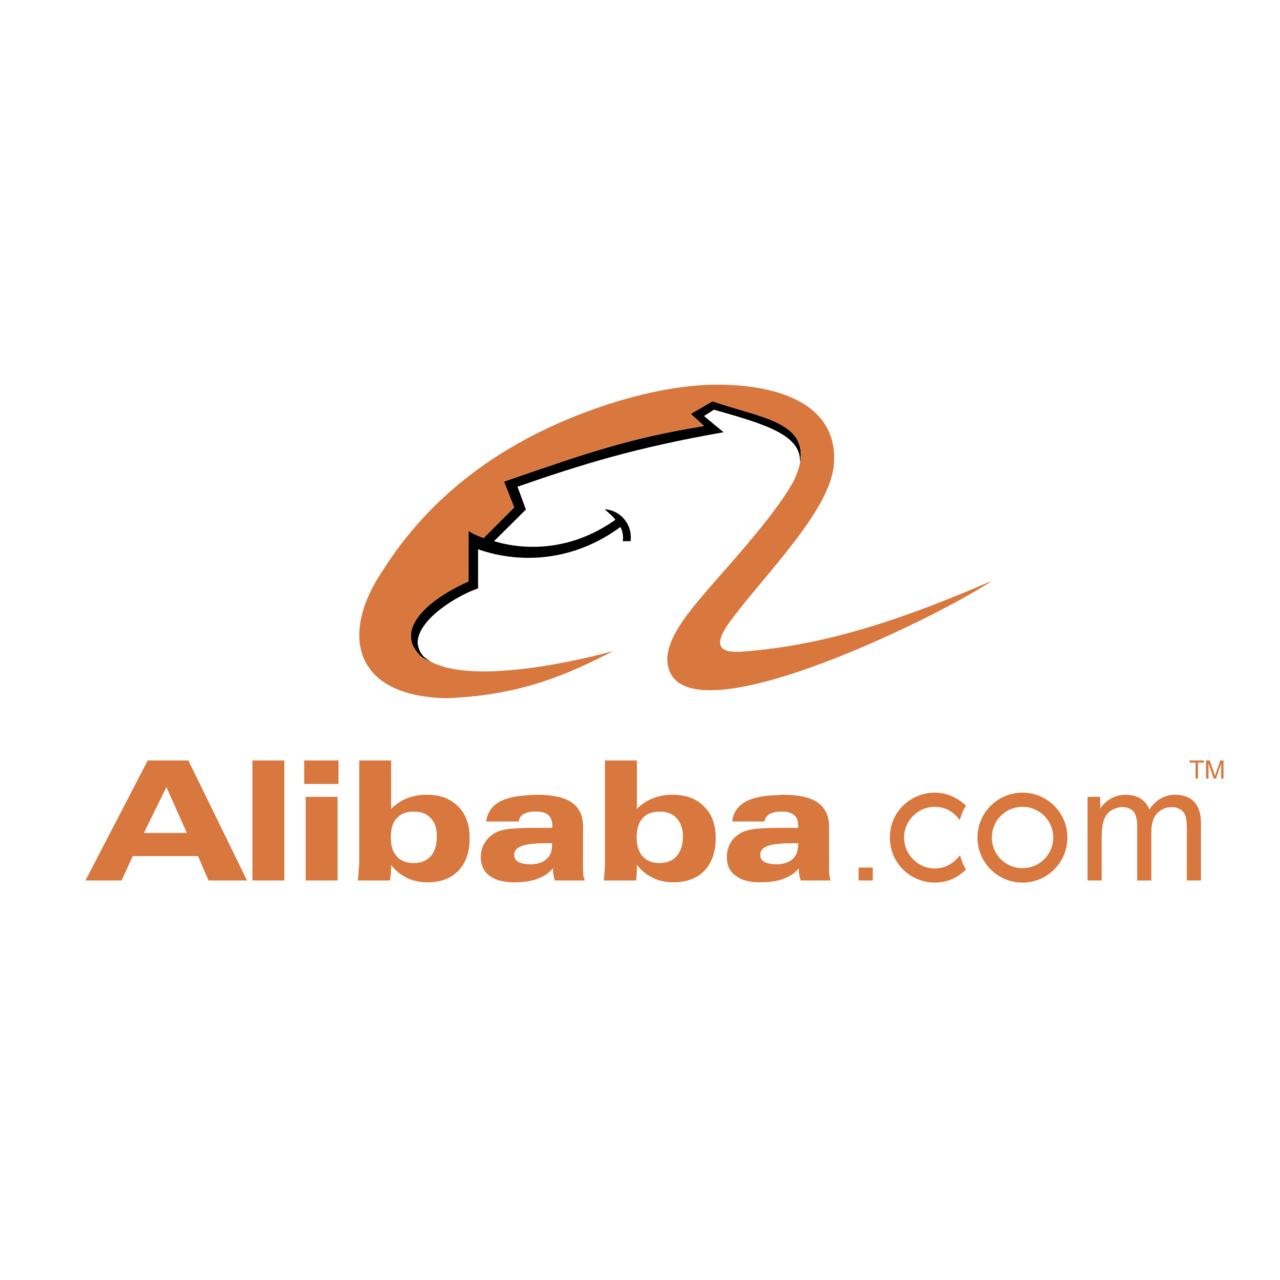 พร็อกซีของ alibaba.com